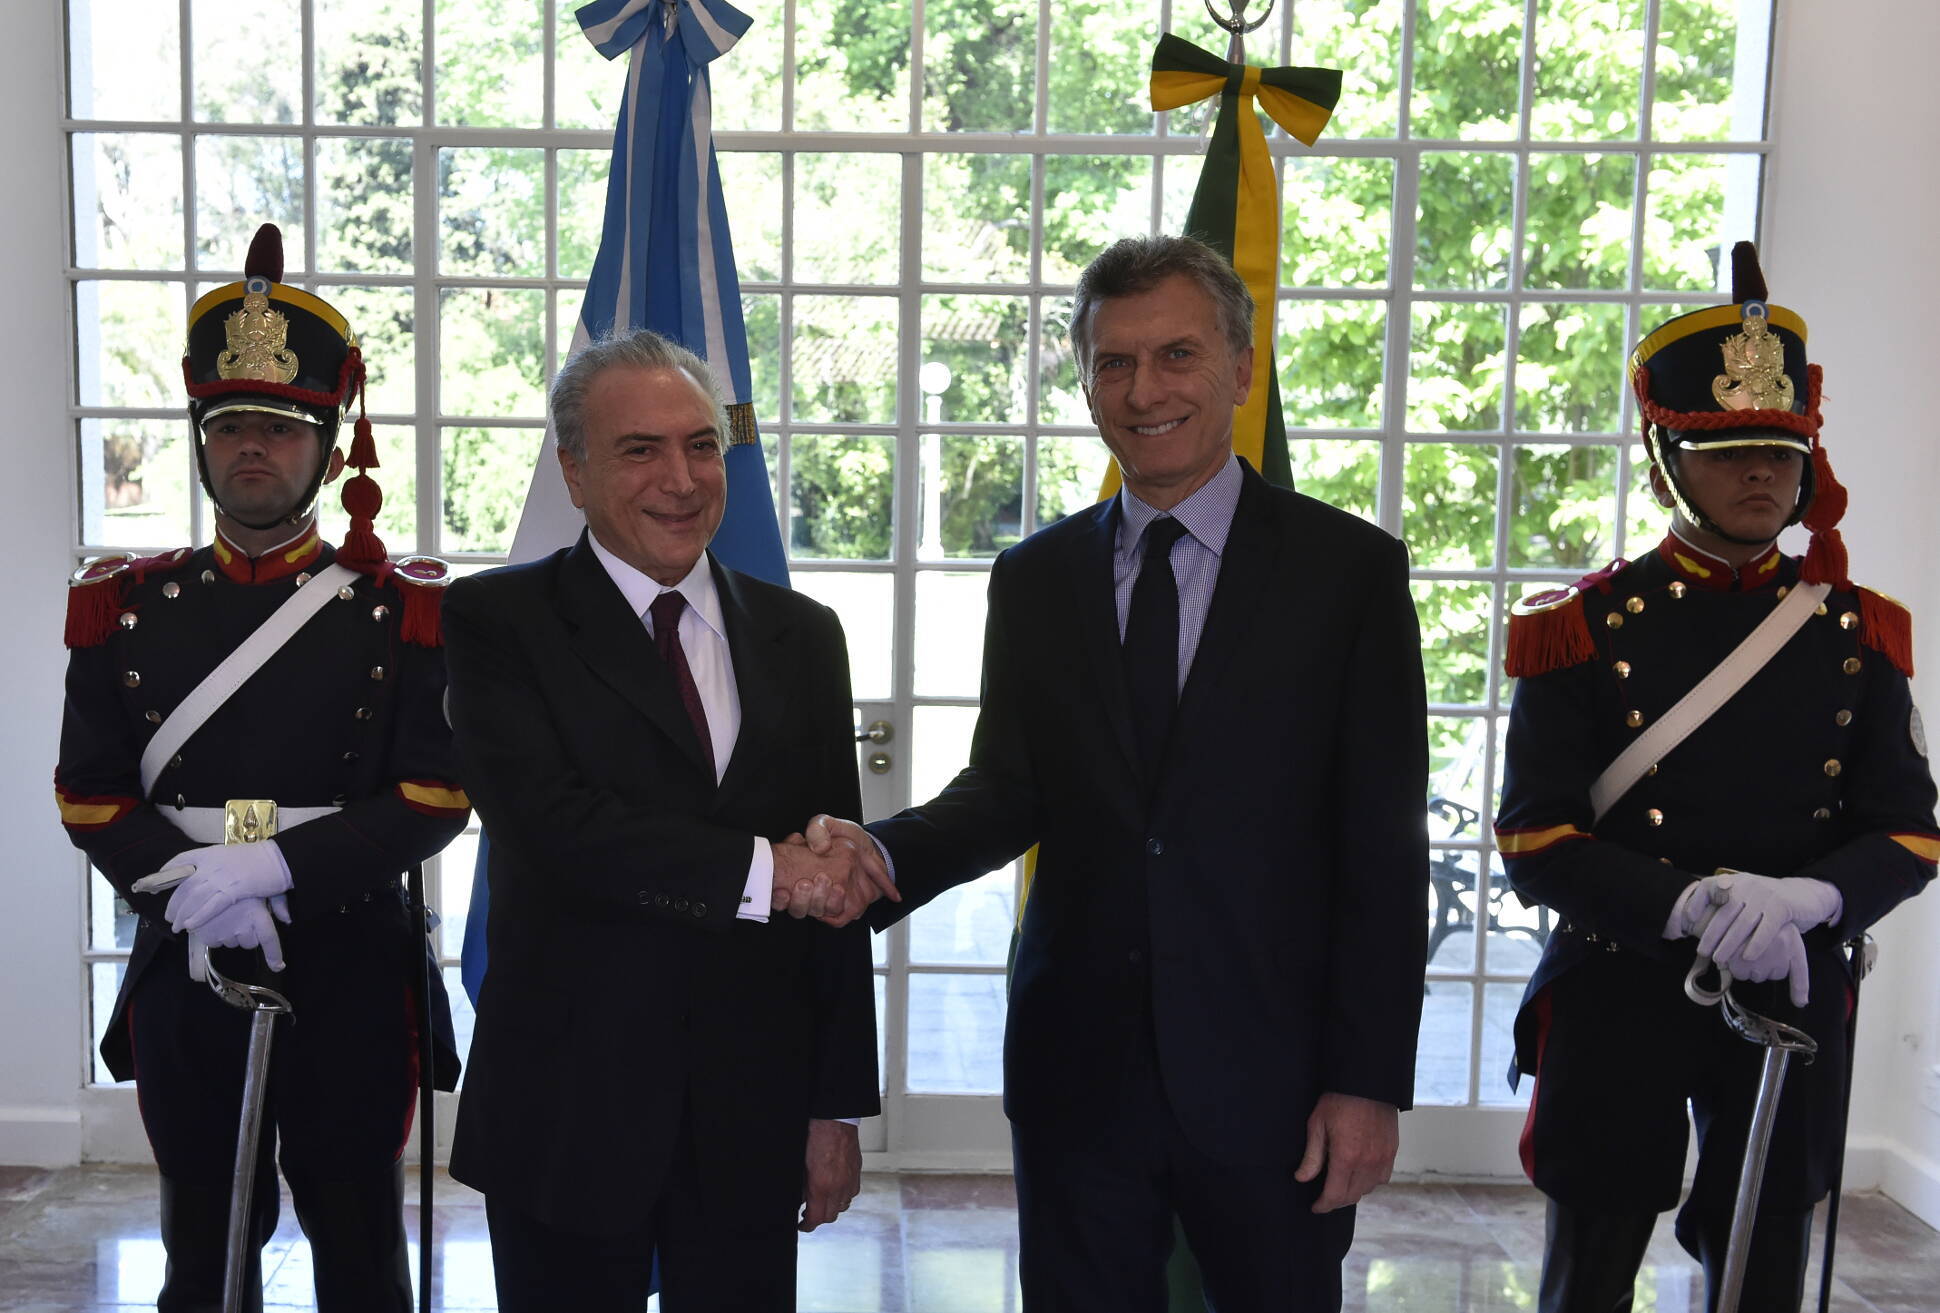 Macri y Temer ratificaron el compromiso de fortalecer al Mercosur